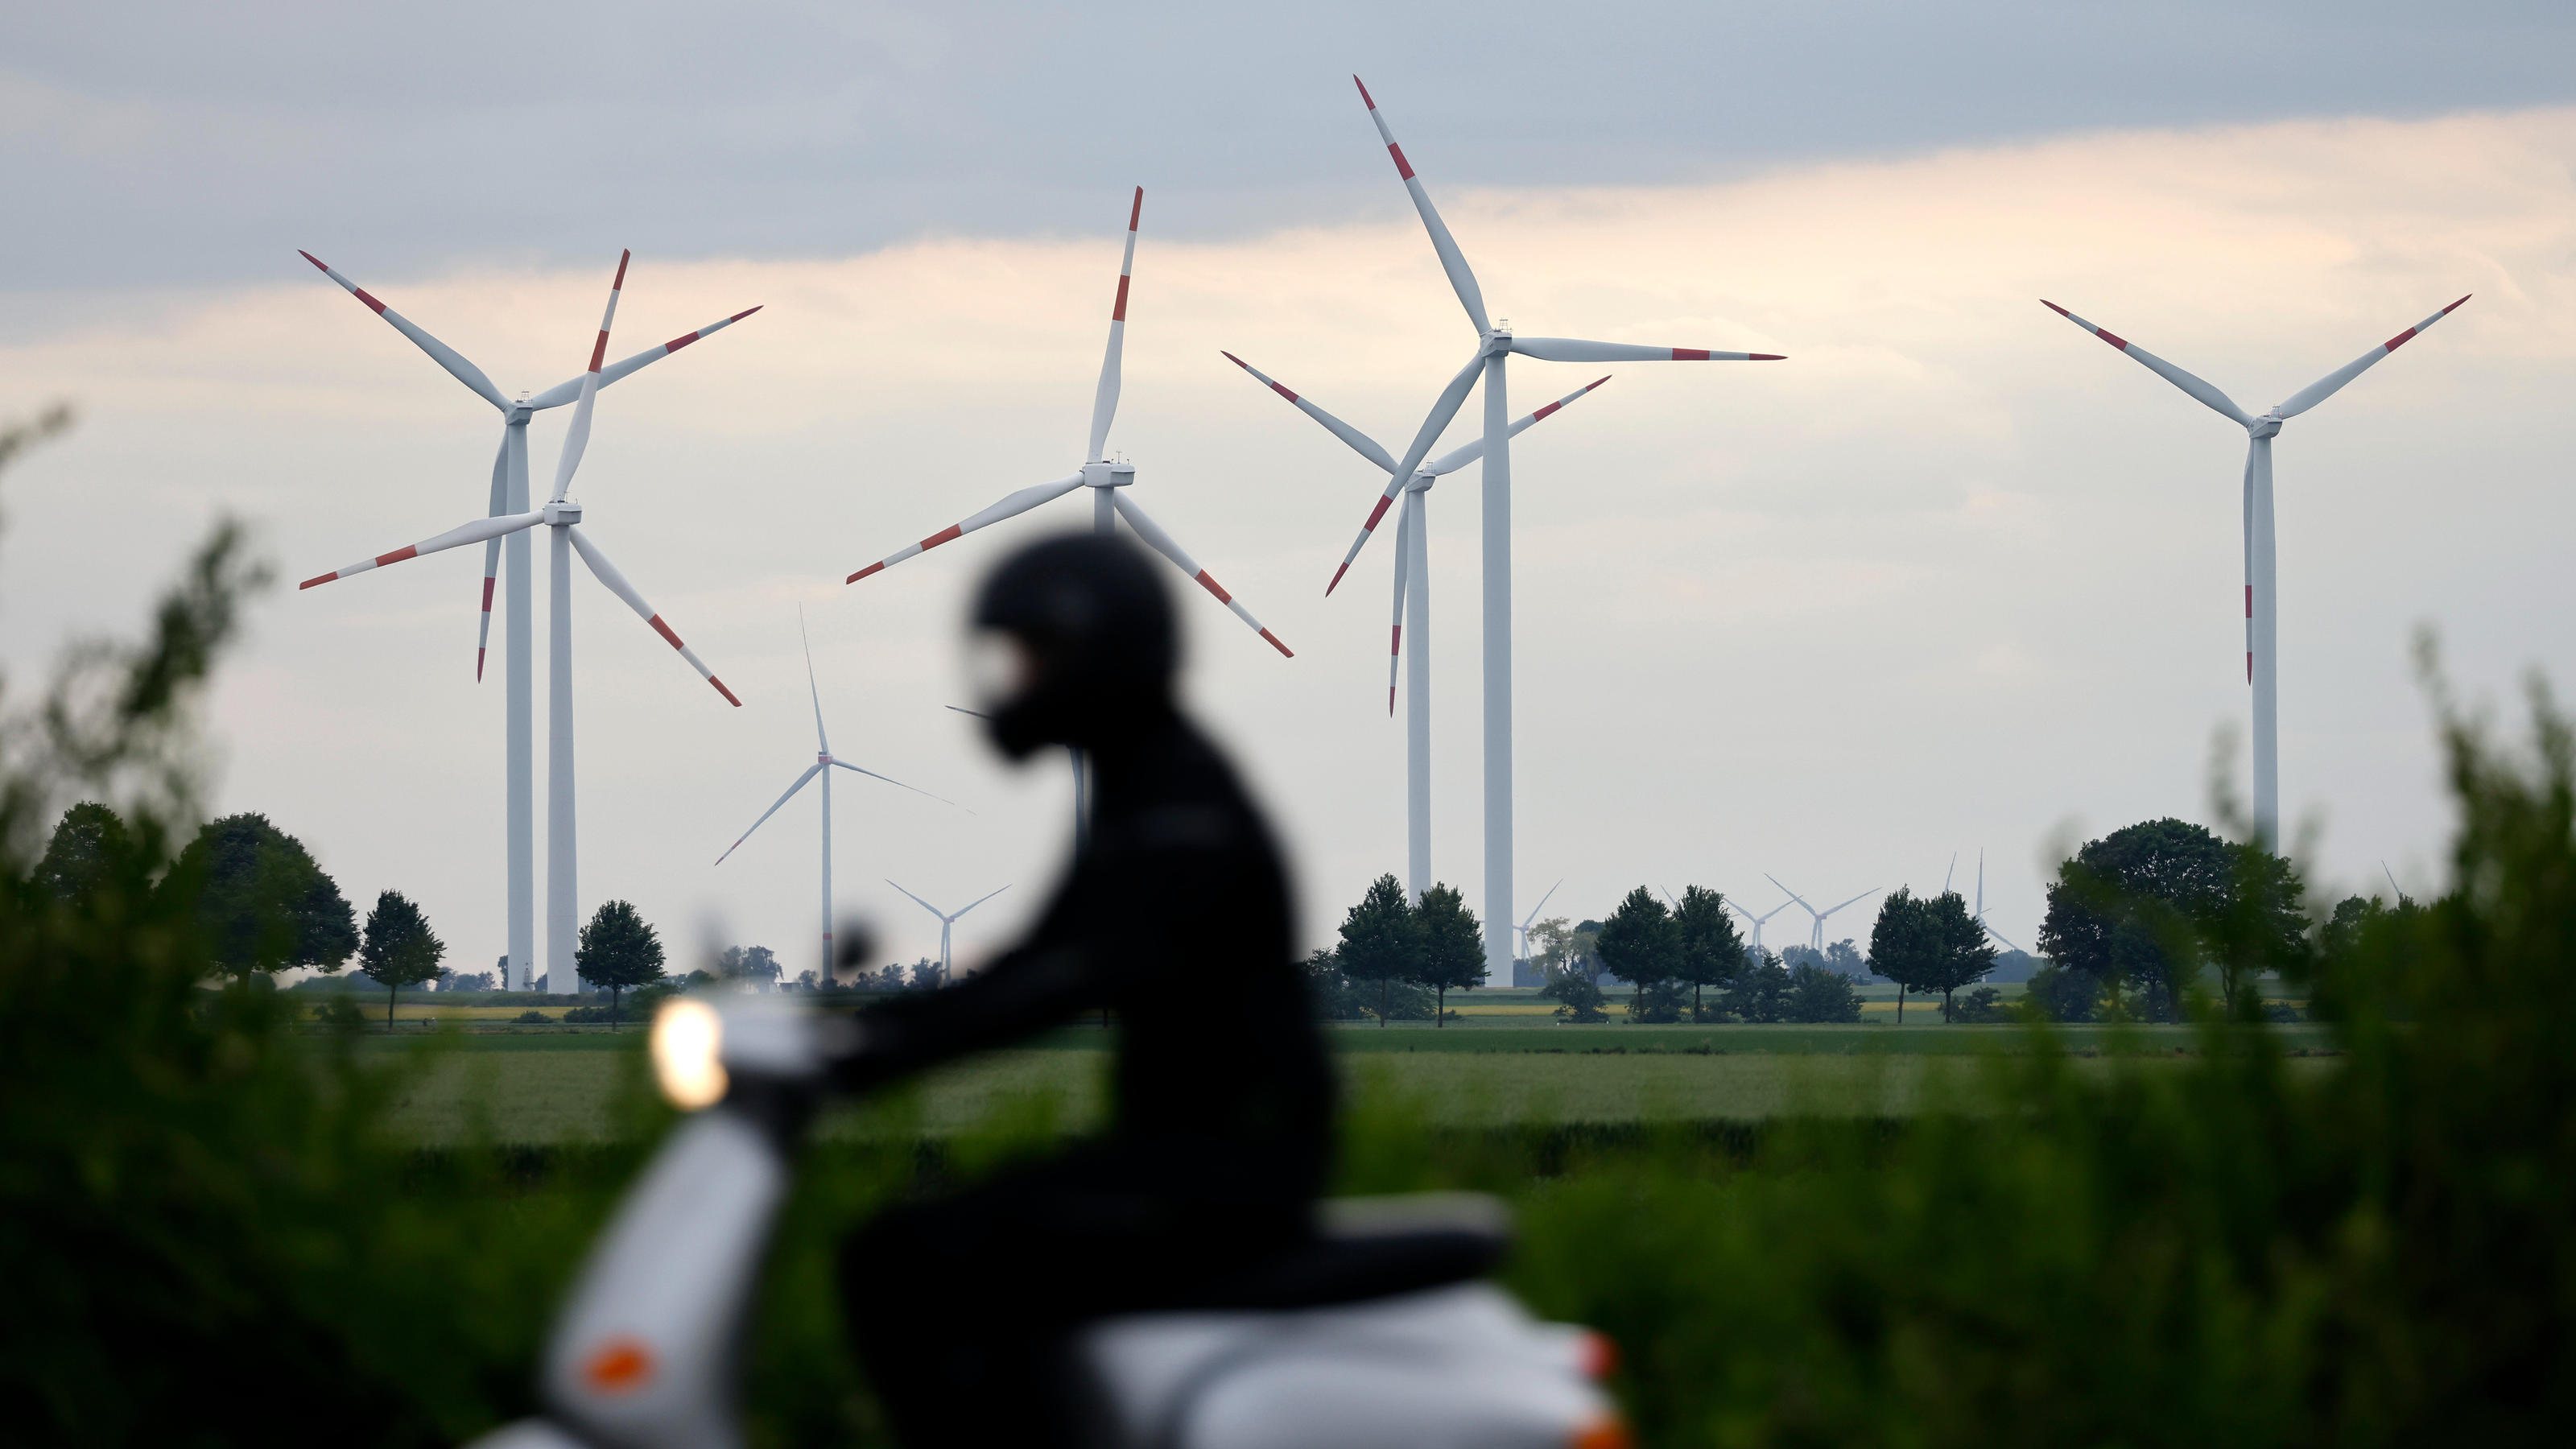 Sonne, Wind, Kohle: Woher kommt unser Strom? Wetter 2022 ist gut für regenerative Energien